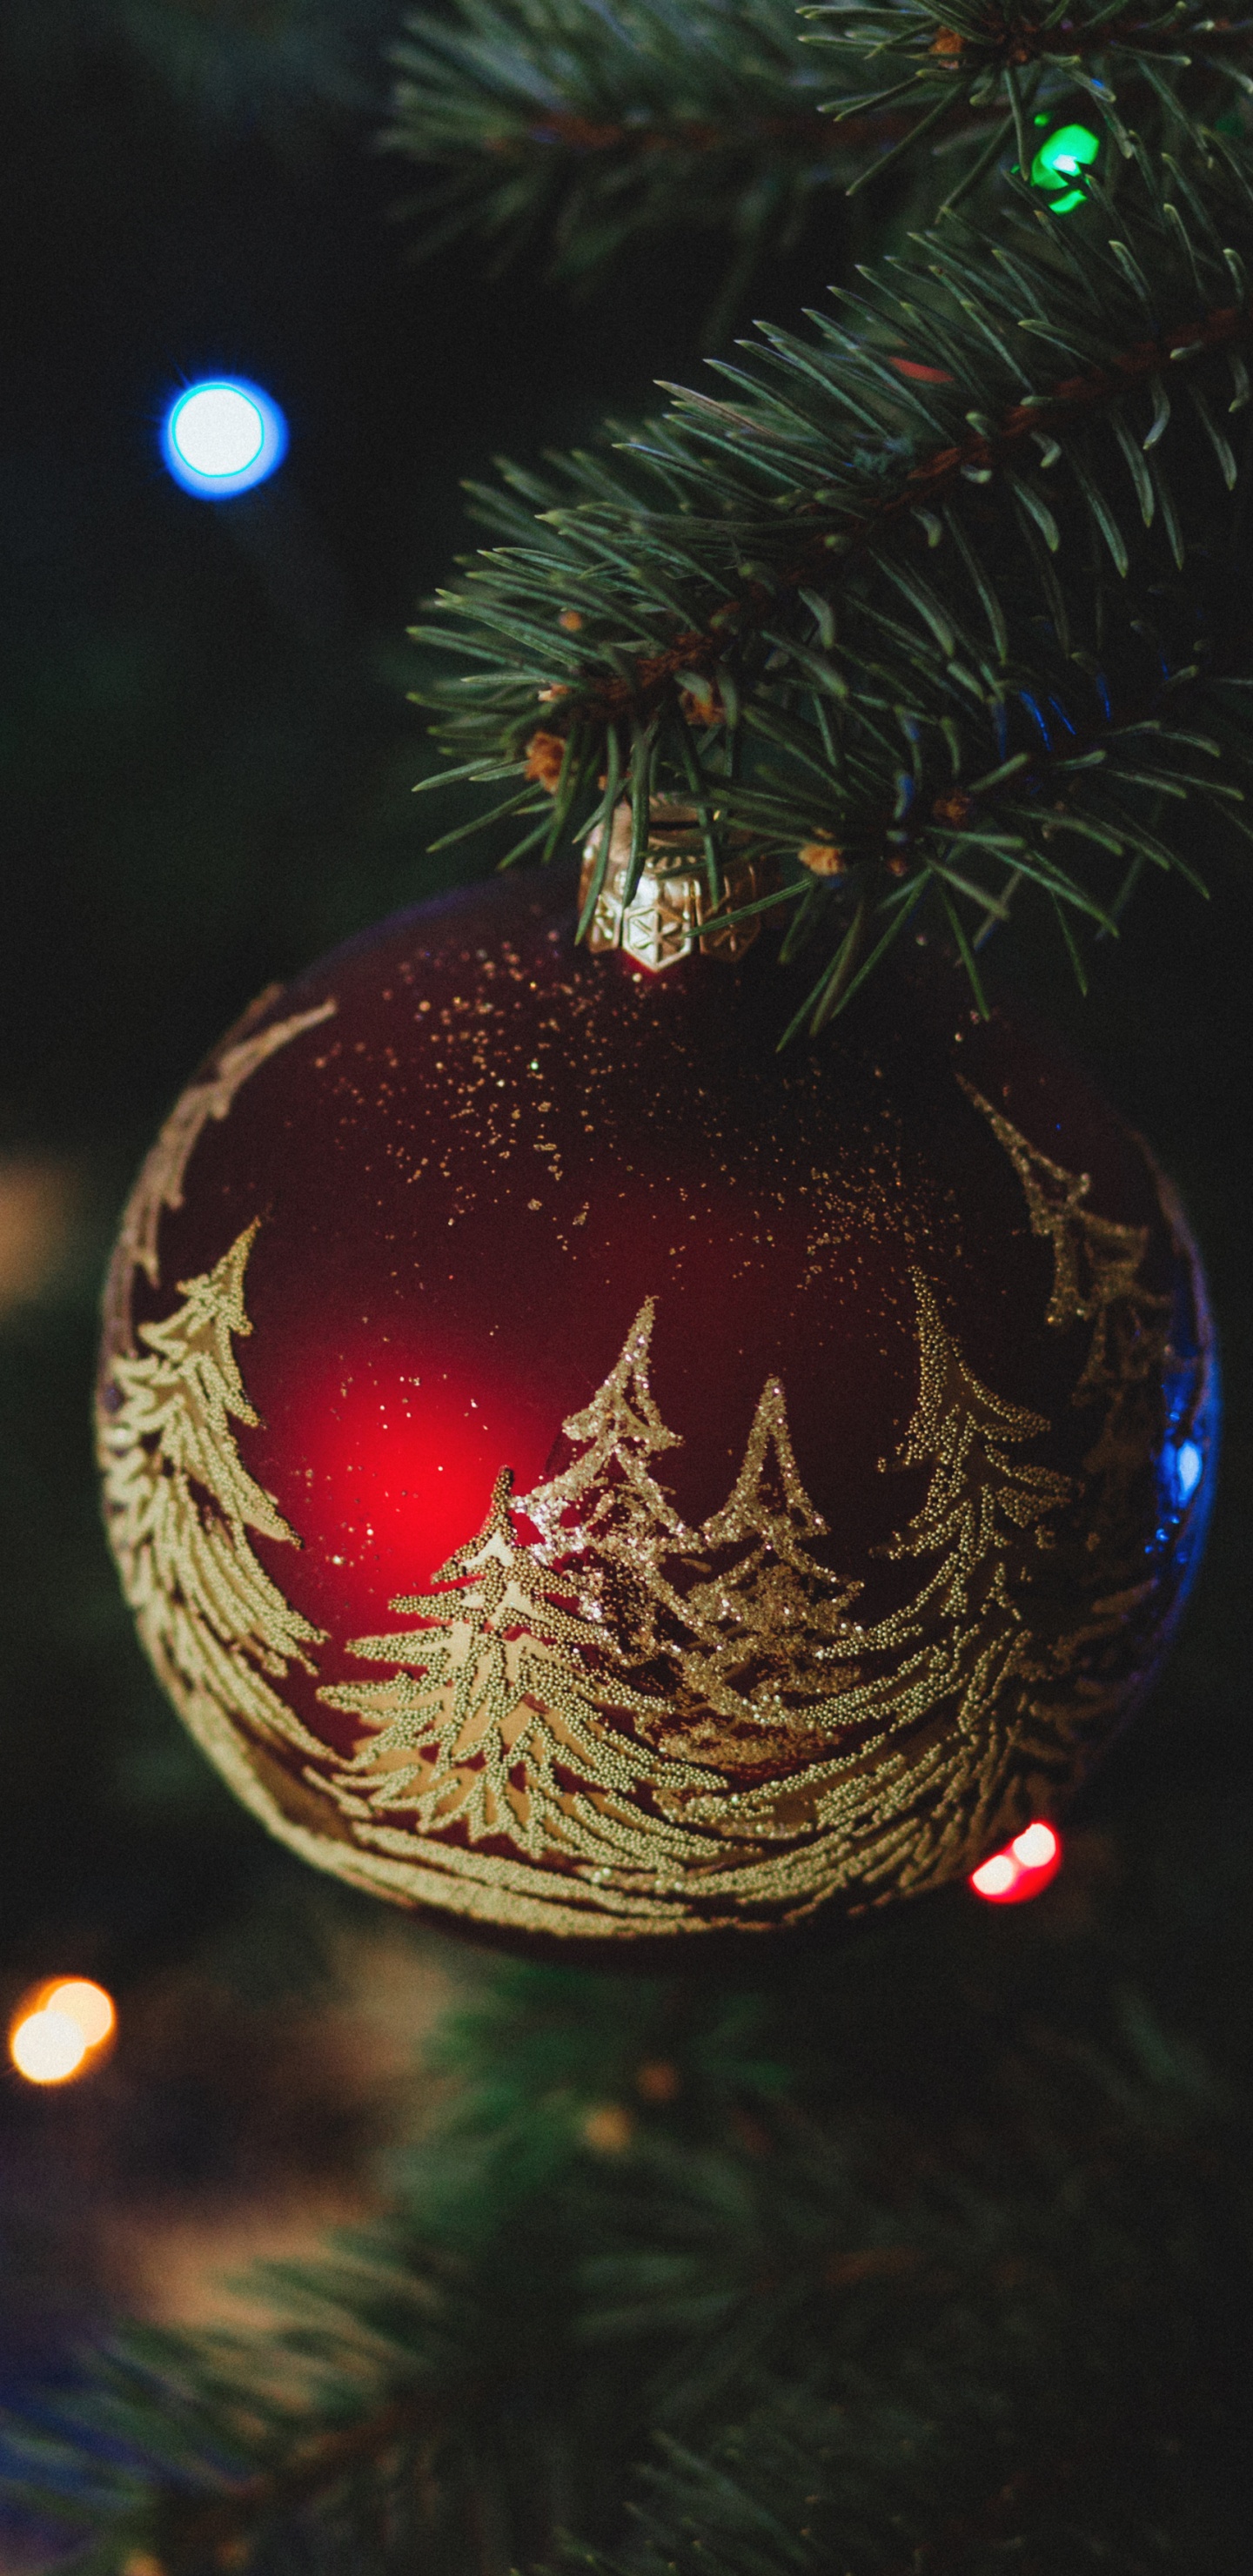 Weihnachten, Weihnachtsdekoration, Christmas Ornament, Weihnachtsbaum, Baum. Wallpaper in 1440x2960 Resolution